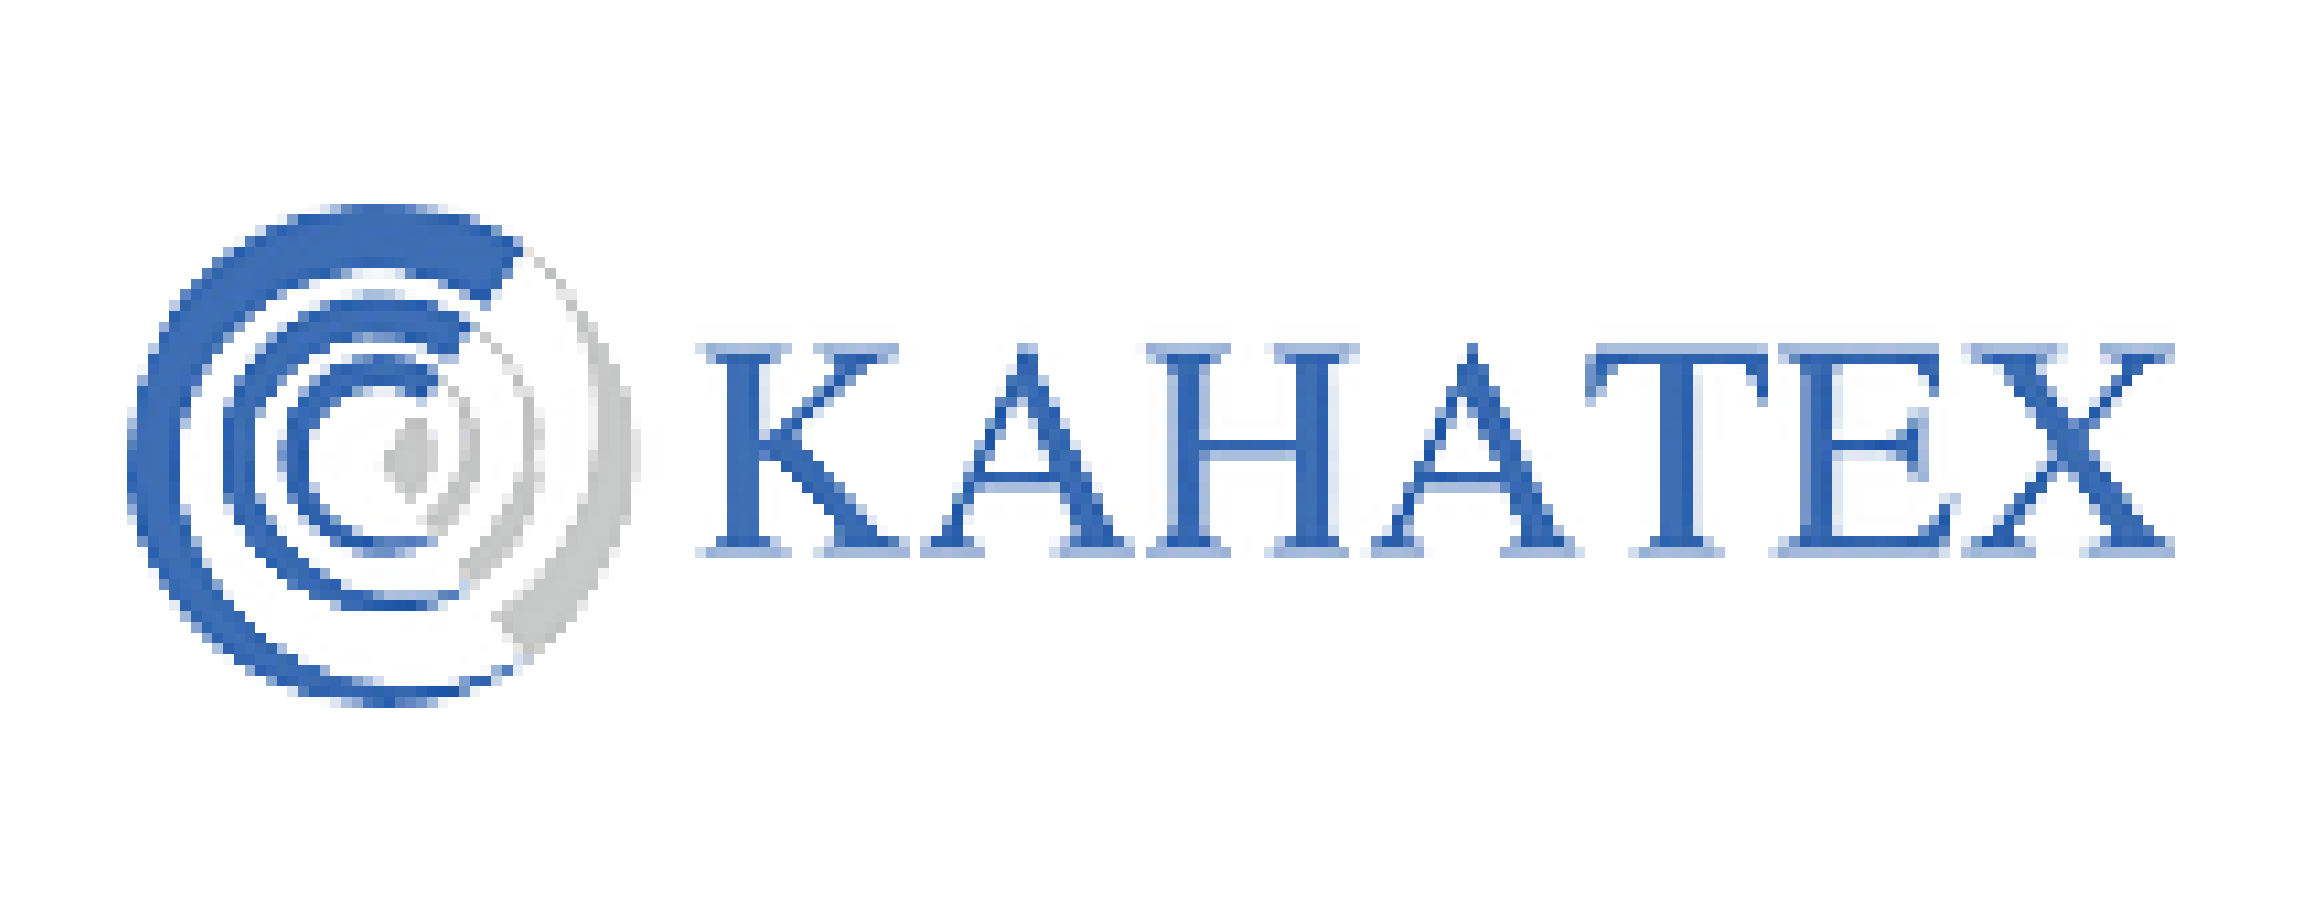 Logo PT Kahatex